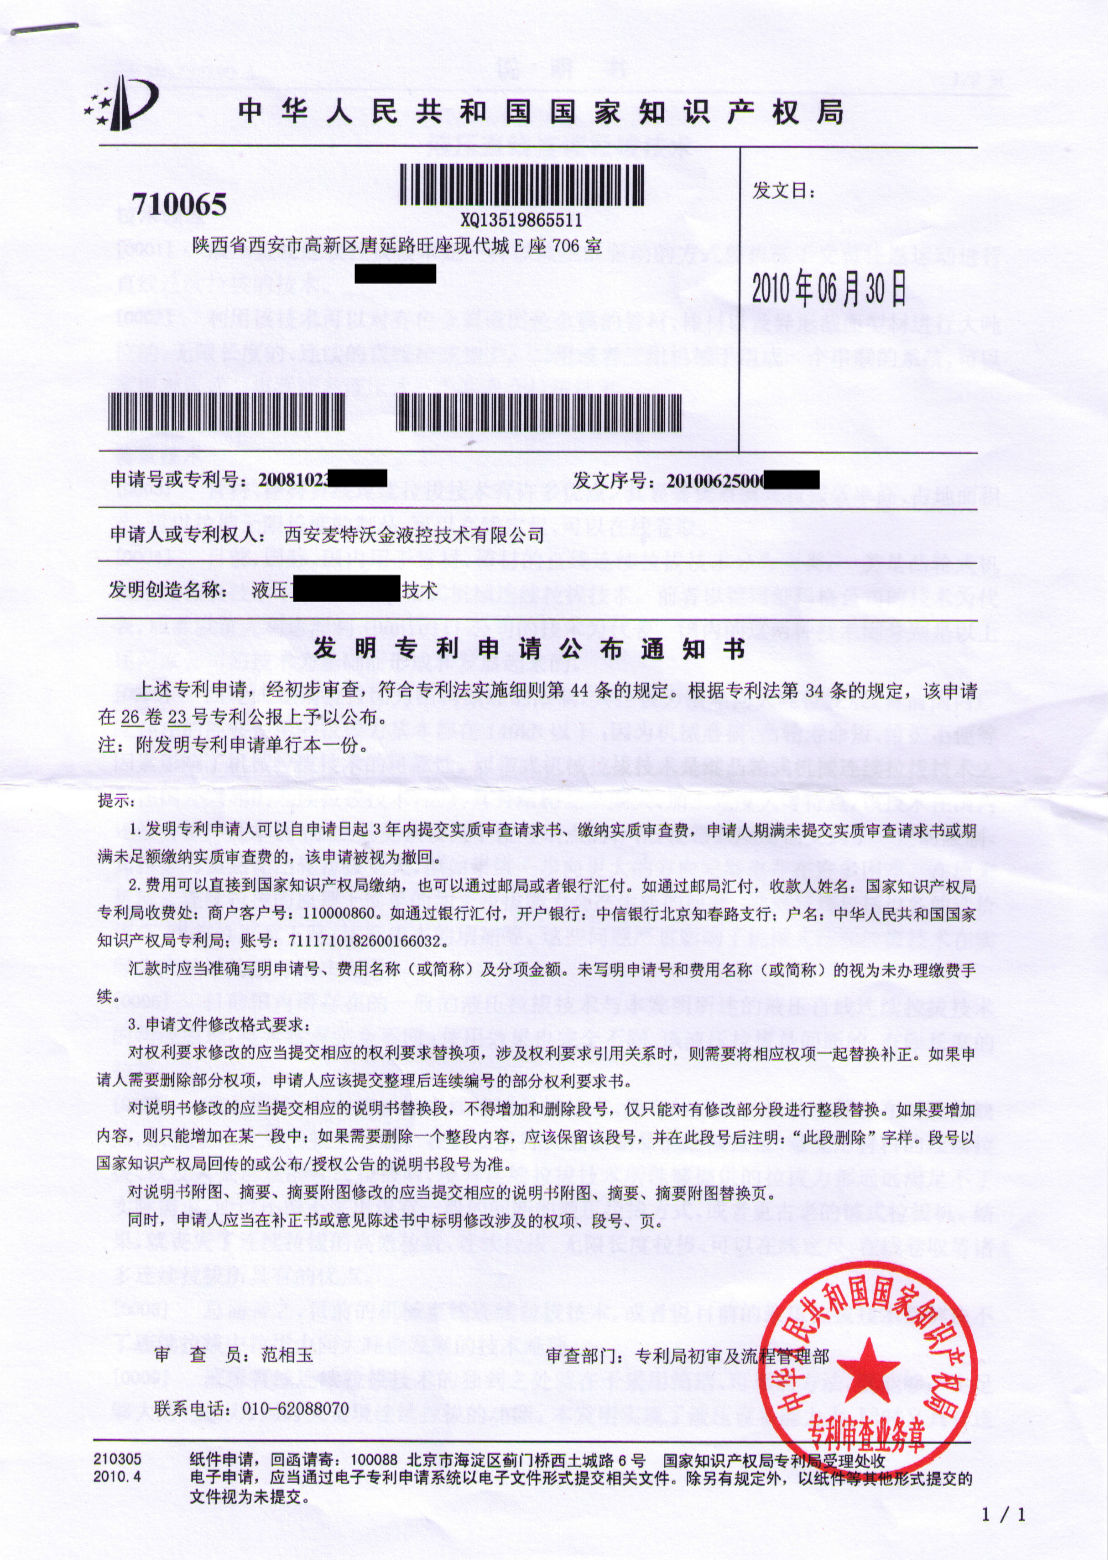 patent certificate of metalwk